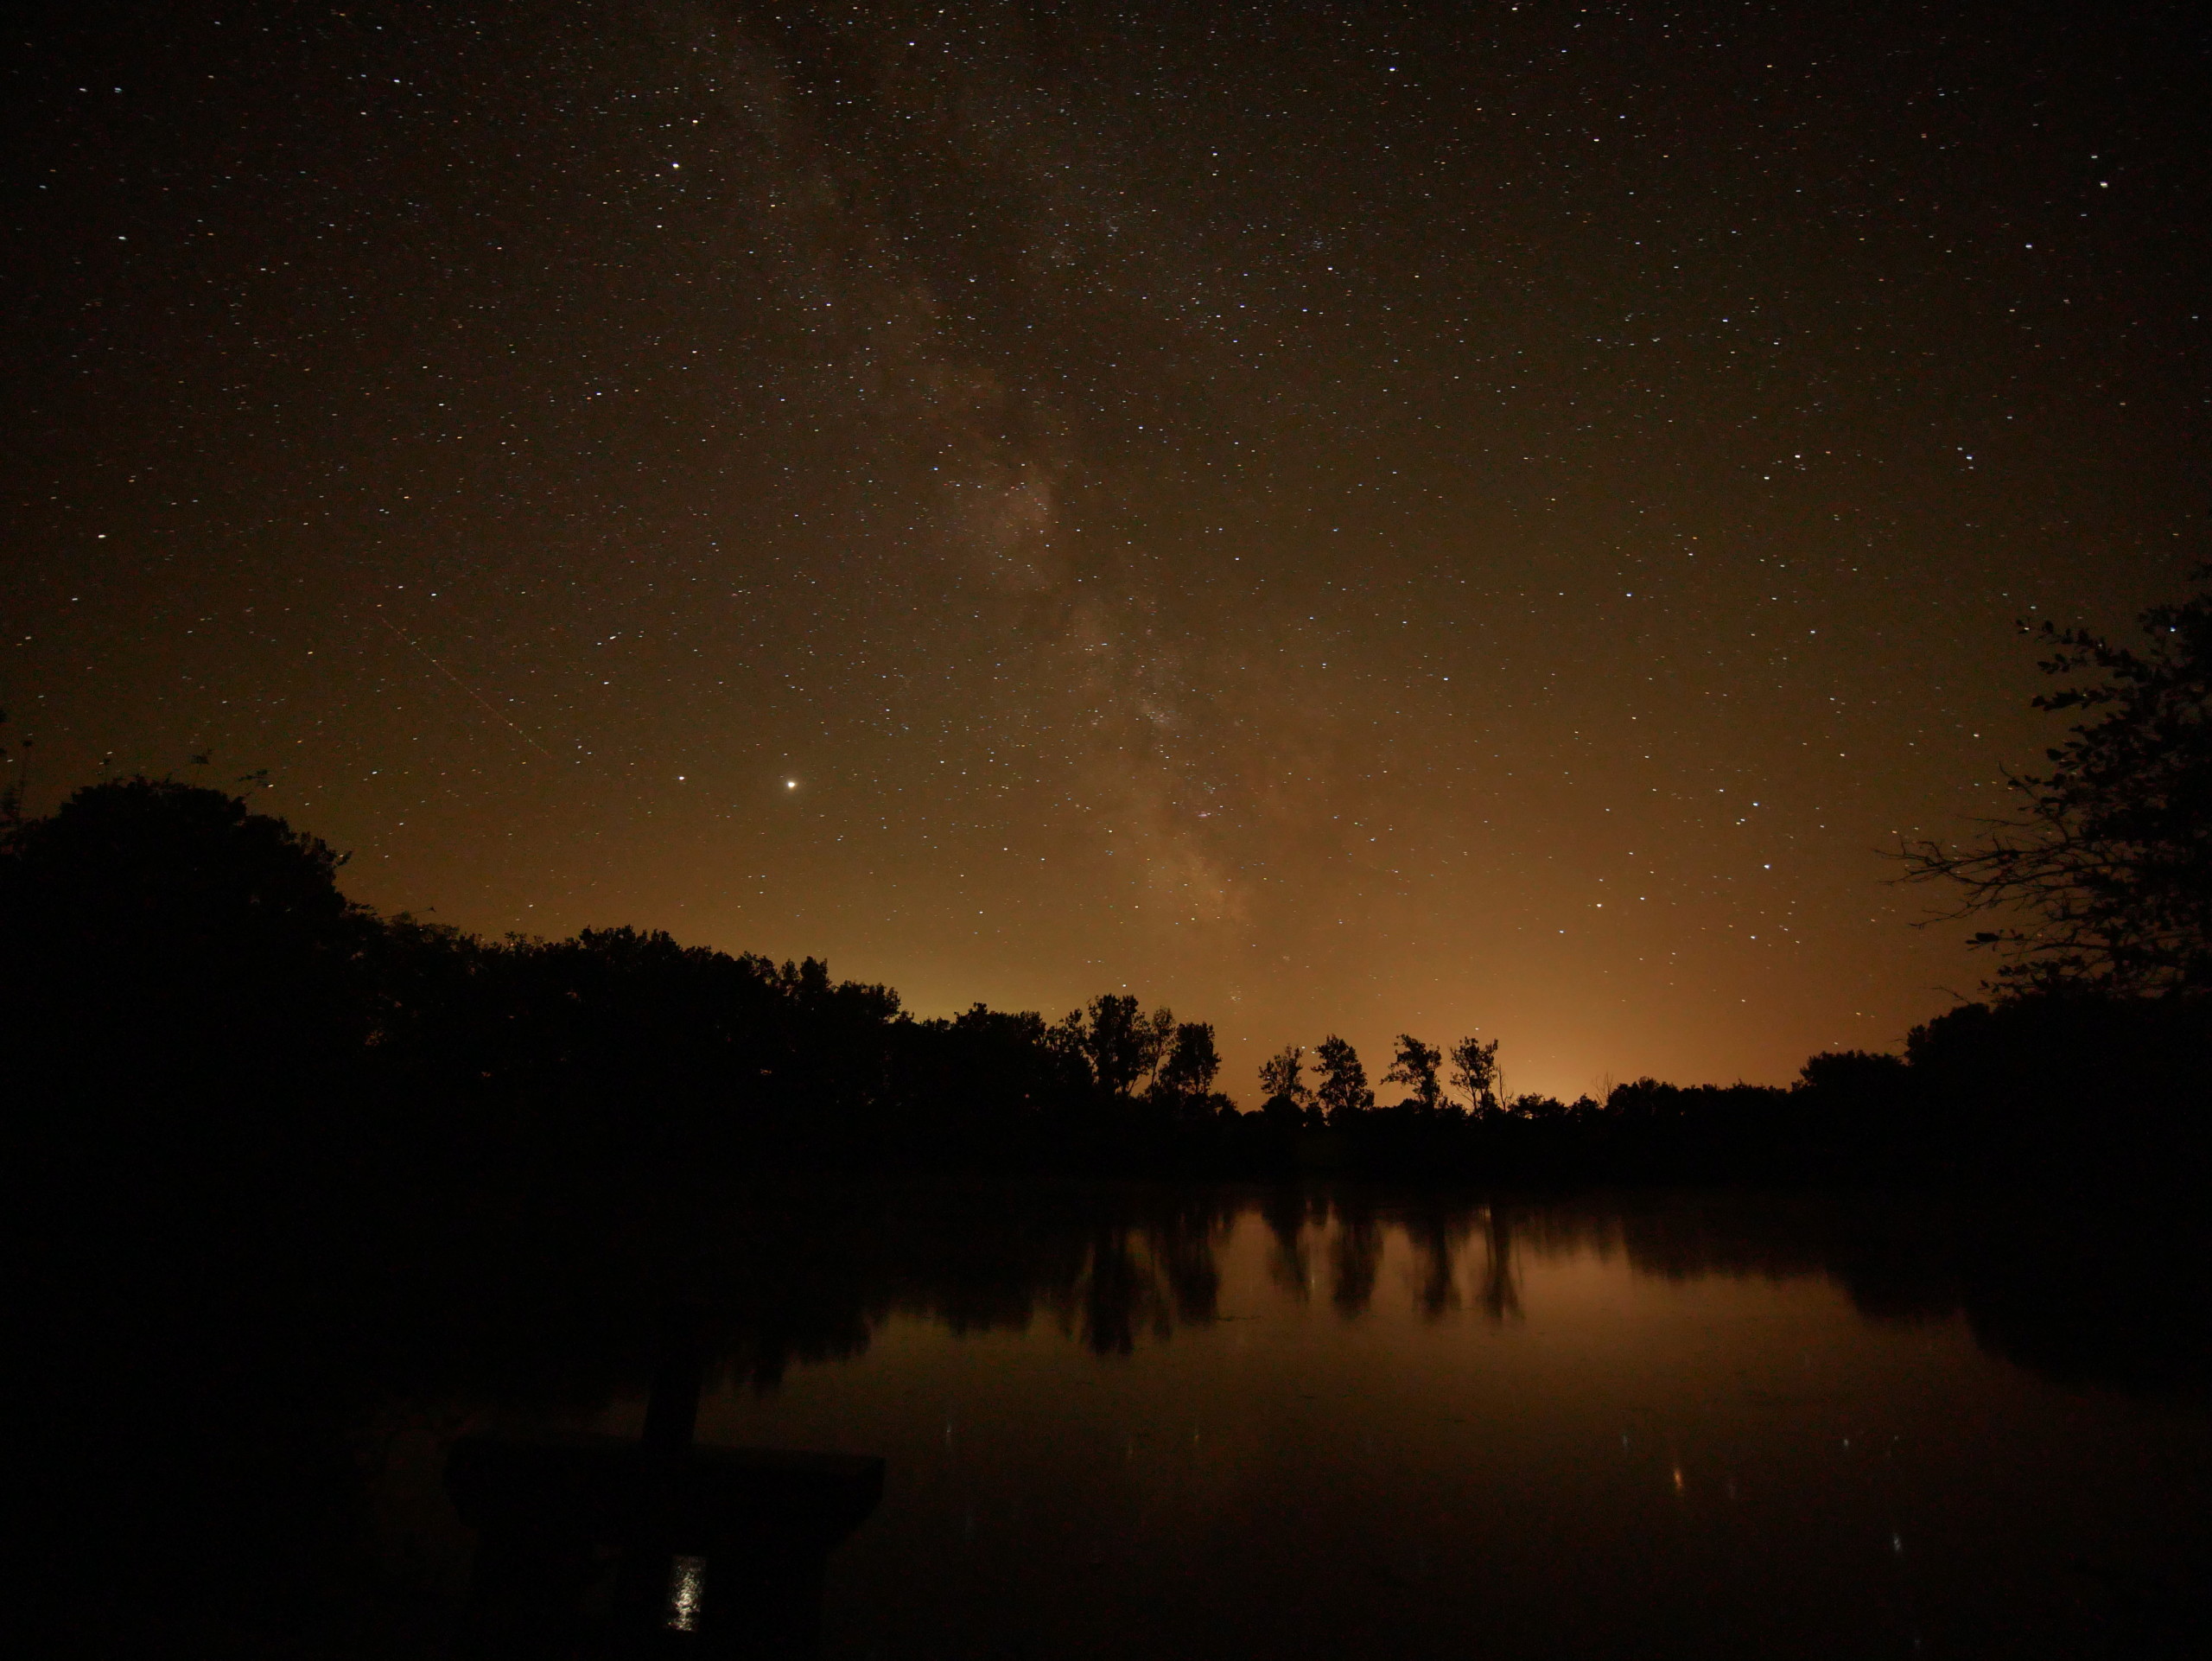 Hesitation objectif pour photo de nuit/voie lactée P1320412